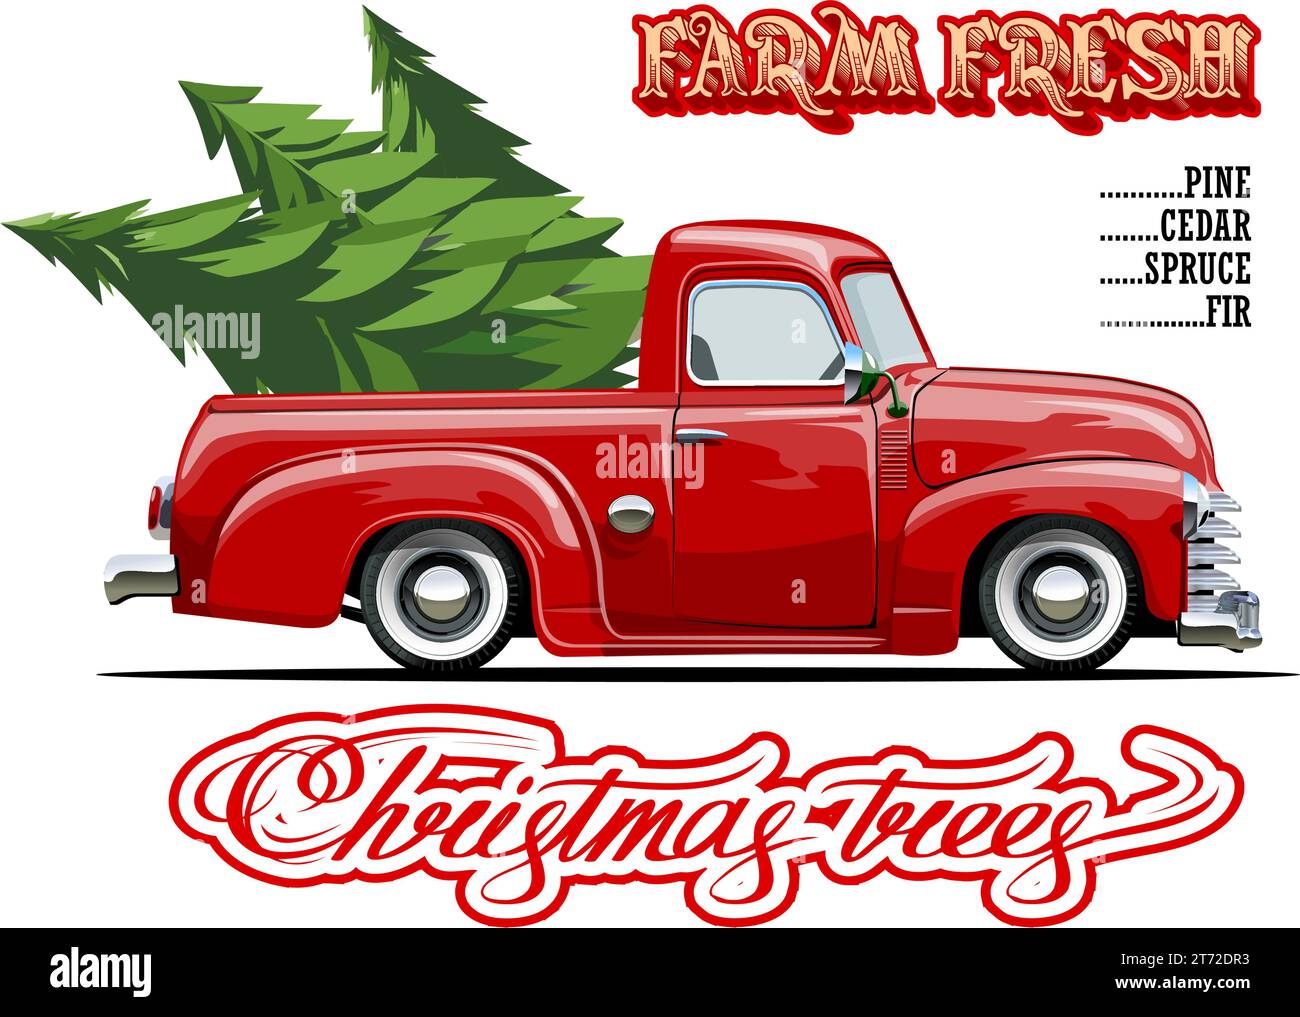 Vektor-Vintage-Bauernhof-Schild mit Weihnachtsbaum von rotem Truck. Farm Fresh Christmas Trees Retro-Poster. Verfügbar im eps-10-Format, getrennt durch Gruppen und la Stock Vektor